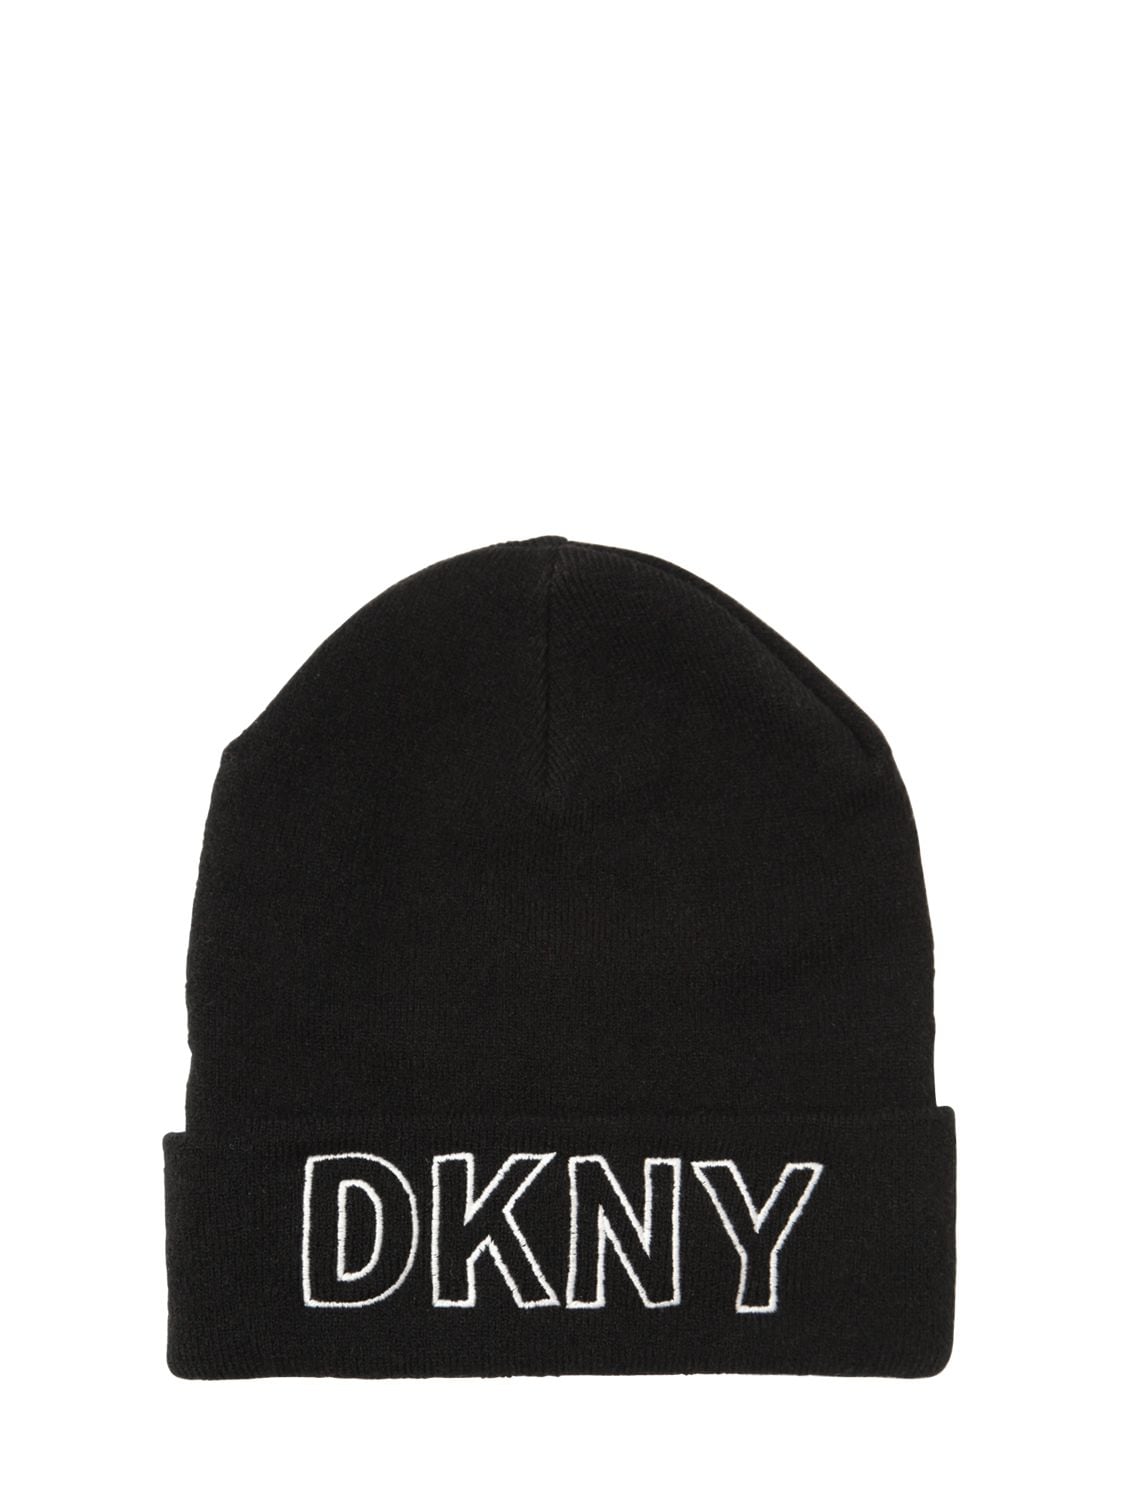 Dkny Kids' 刺绣logo帽子 In Black